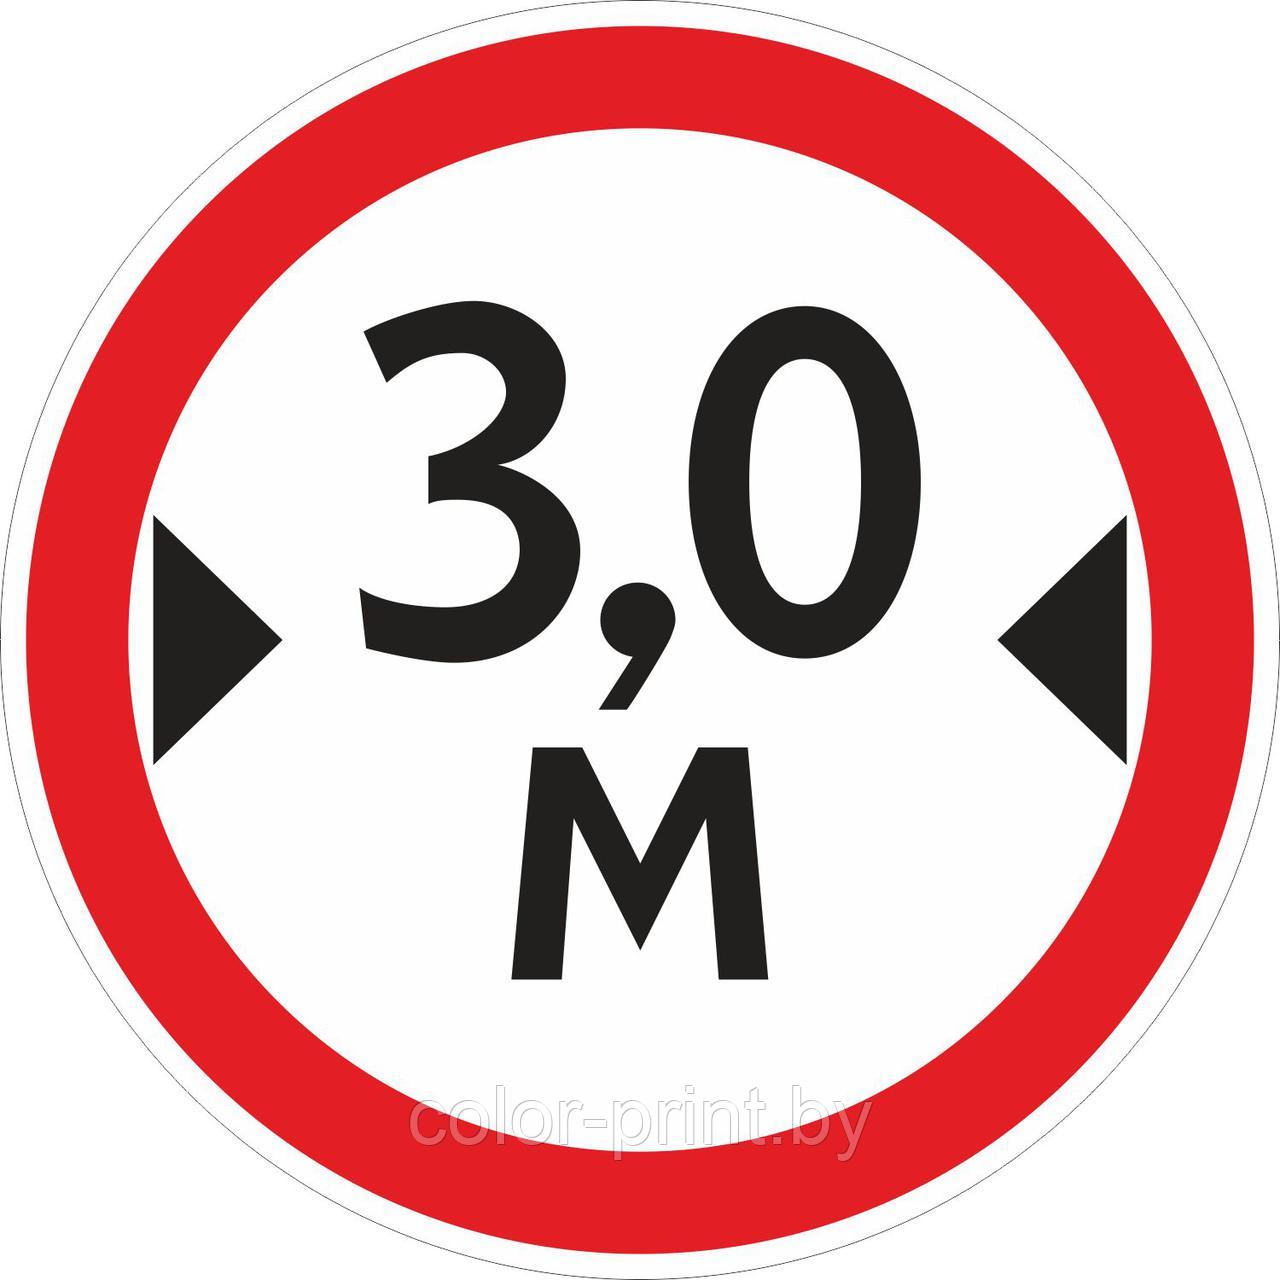 Наклейка ПВХ "Ограничение ширины проезда 3.0м"